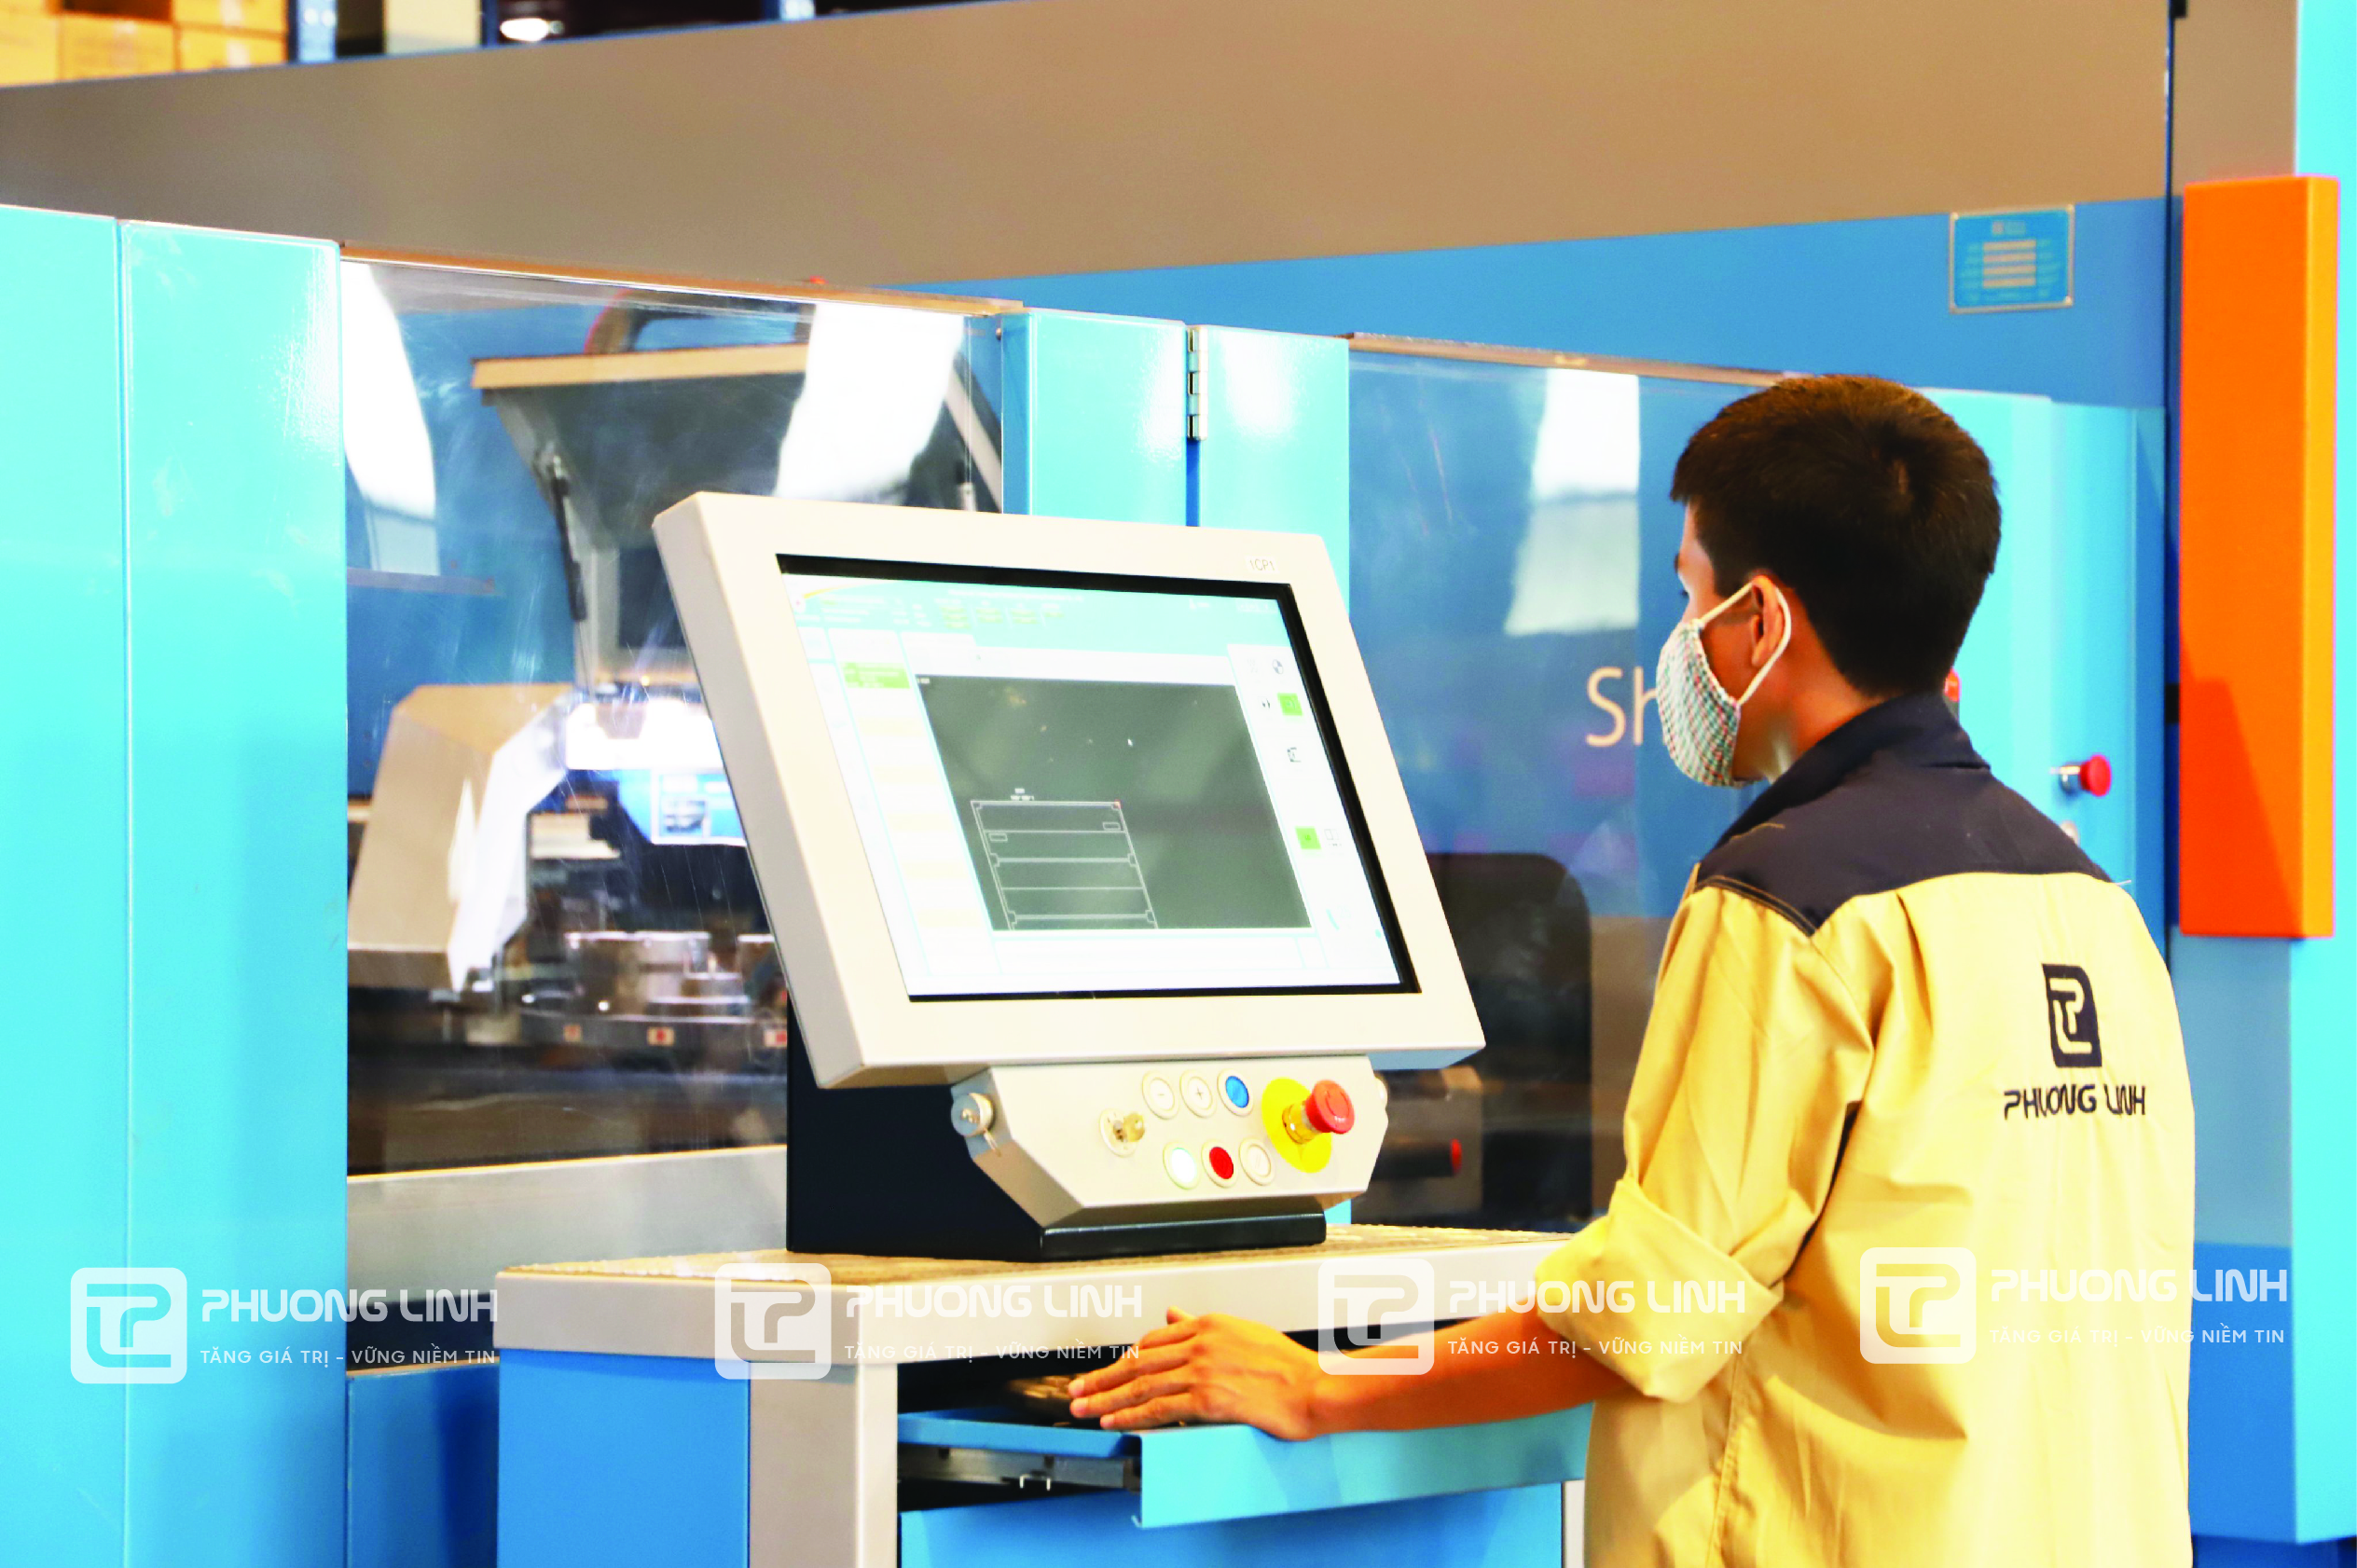 Hệ thống máy móc công nghệ 4.0 hiện đại tại nhà máy Phương Linh